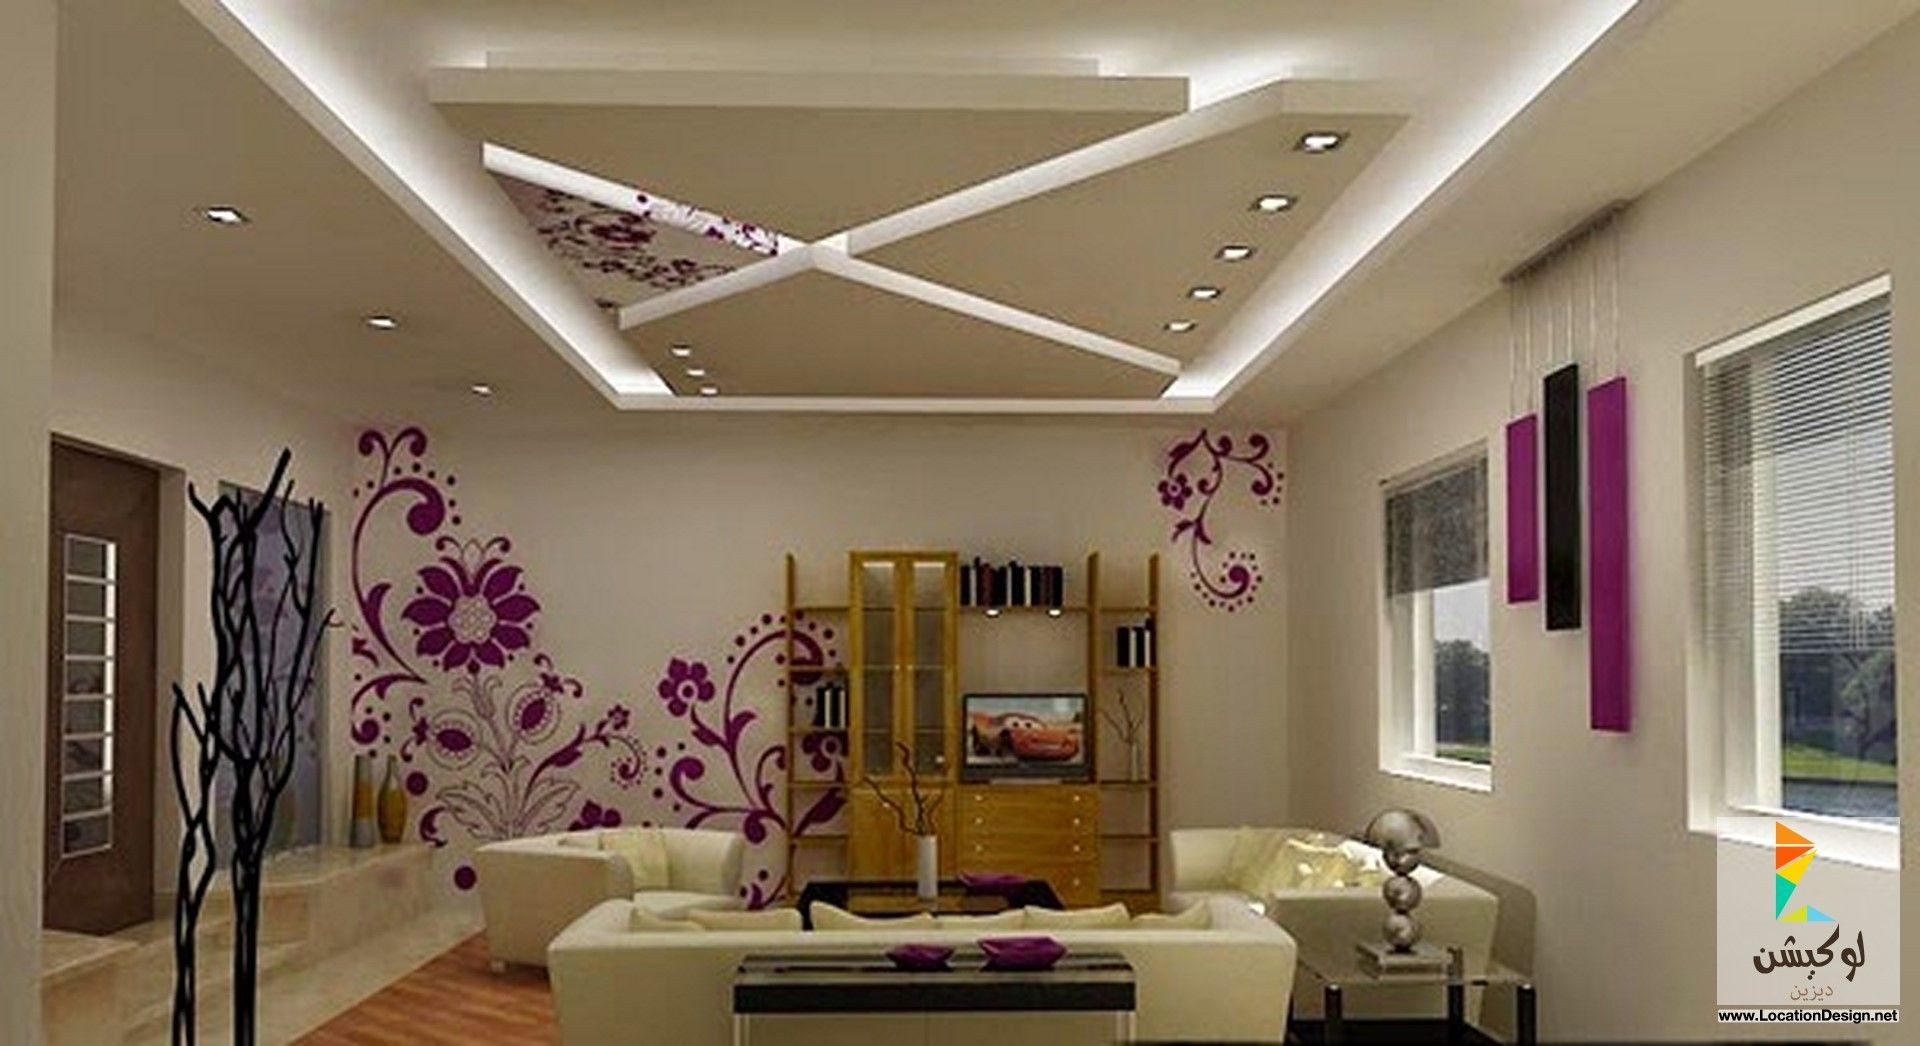 Красивый потолок с подсветкой в гостиной фото